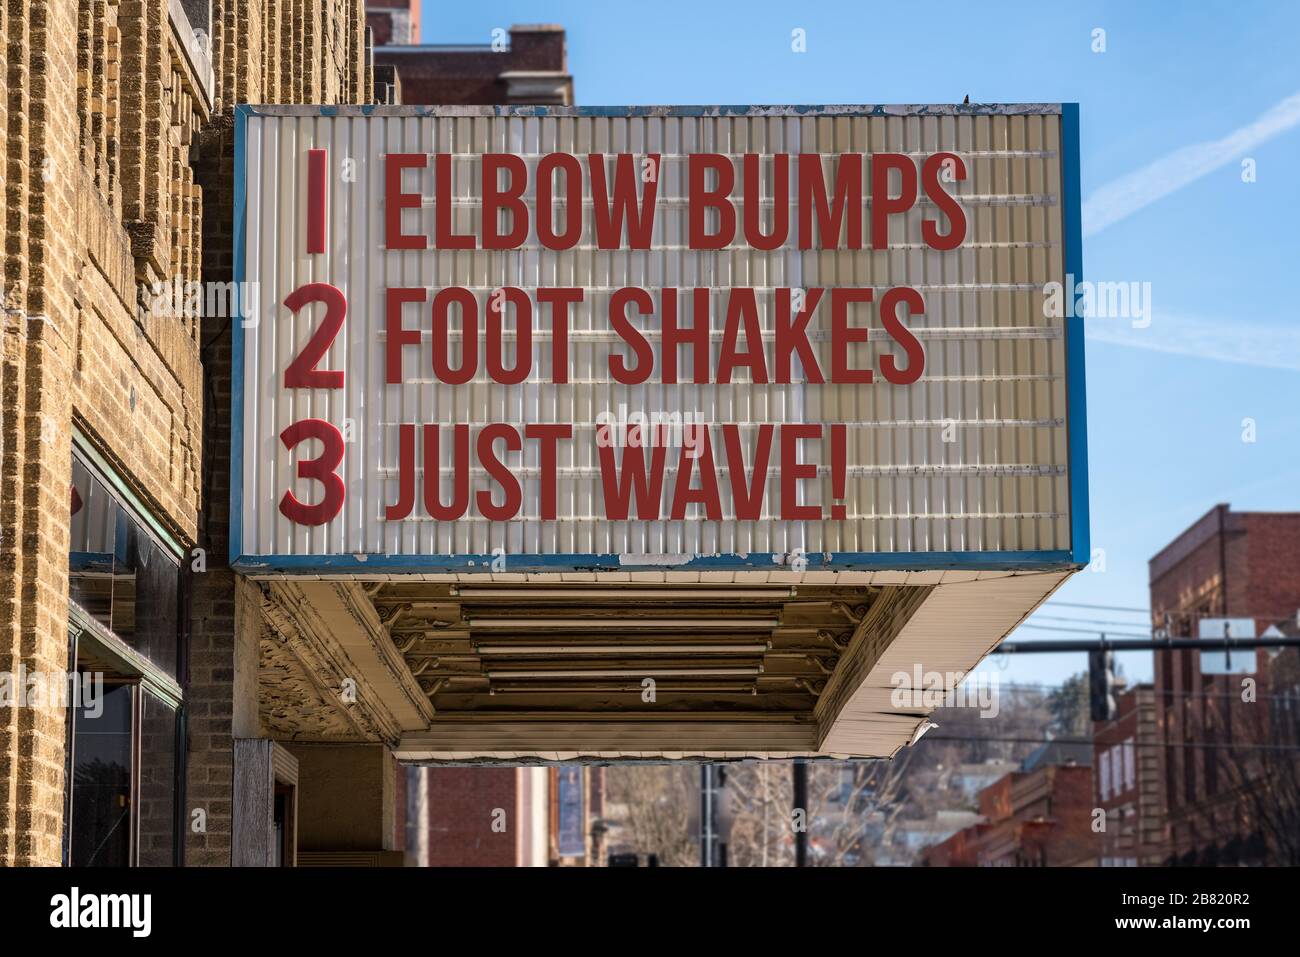 Kino-Plakat mit drei Regeln zum Ersetzen von Handshakes durch Ellenbogenwumps, Fußschütteln oder einfach nur dem Freund während der Coronavirus-Epidemie winken Stockfoto